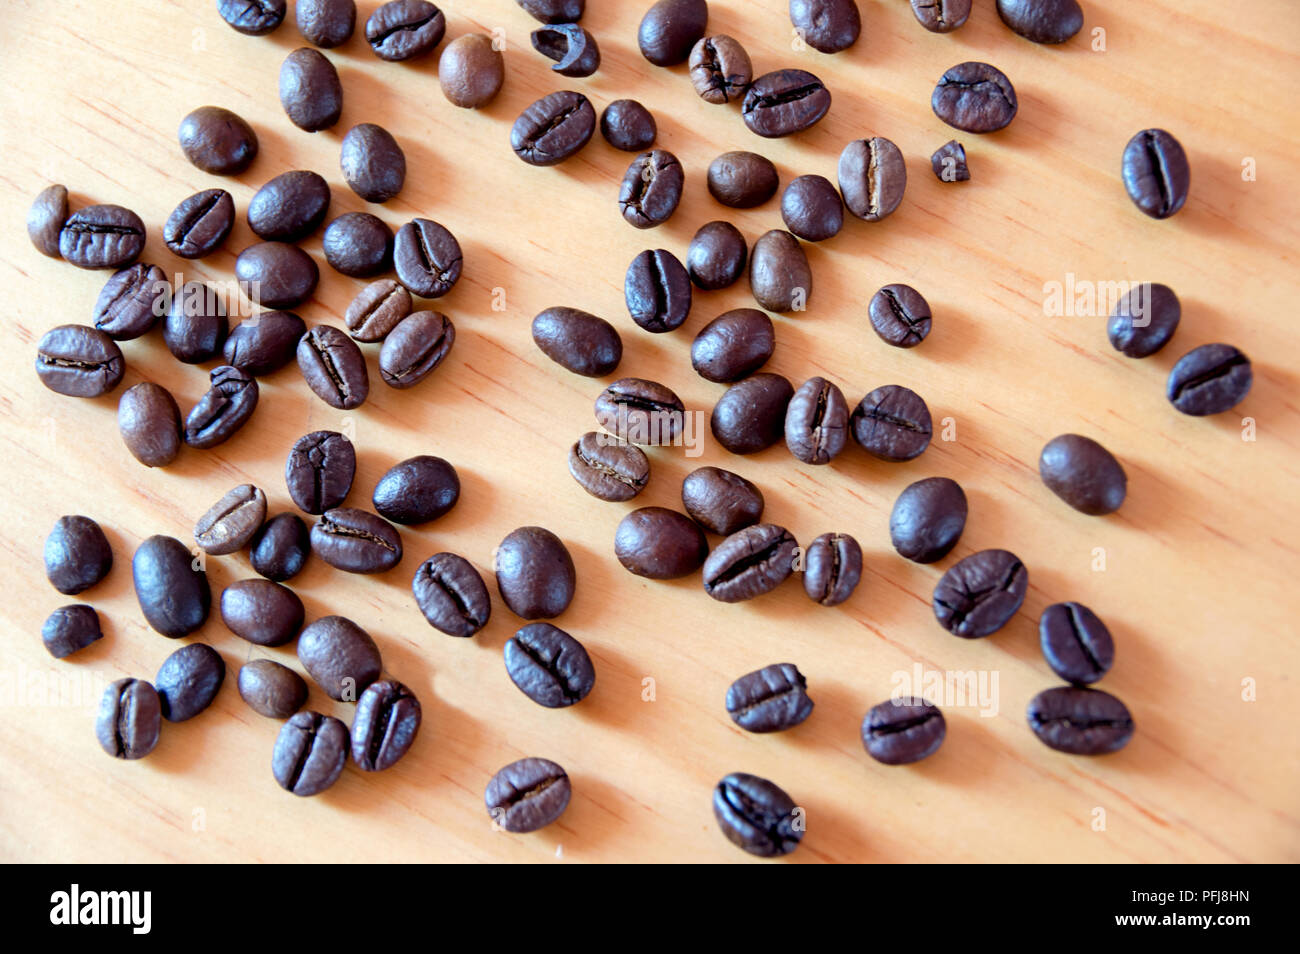 Und mokka Arabica Kaffeebohnen verwenden, um in den Bereichen Design, Werbung, Handel und Marketing ... Stockfoto